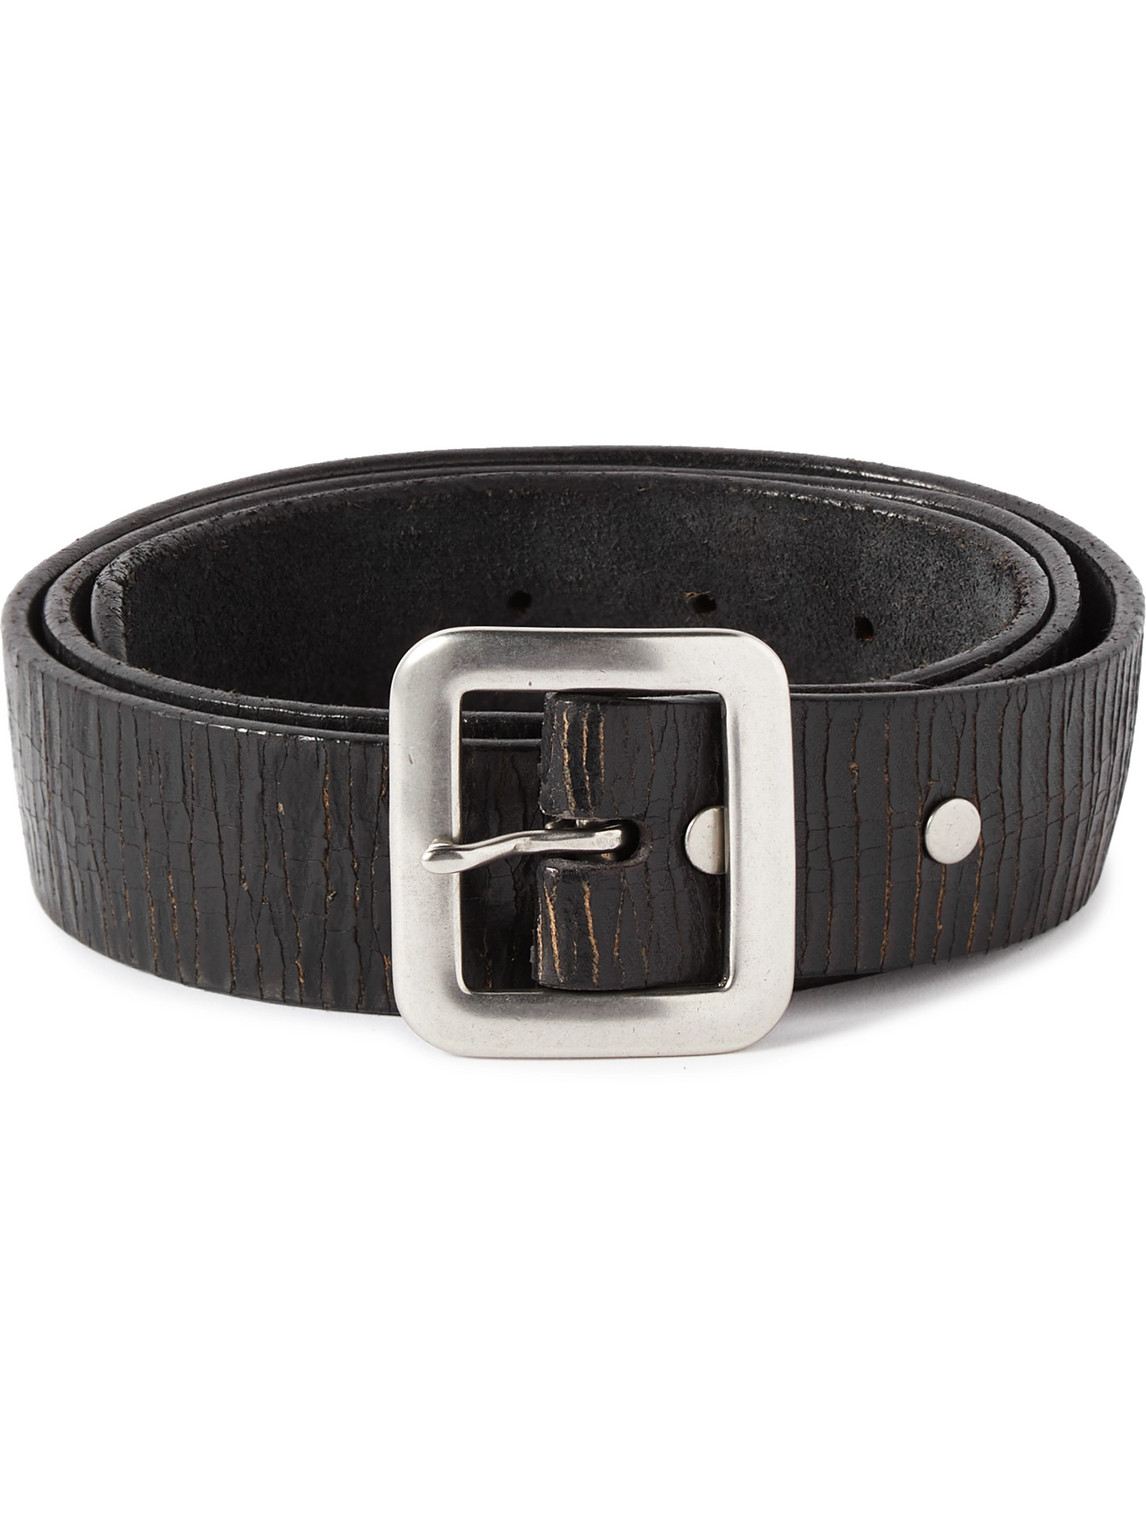 Rrl New Burling 4cm Distressed Leather Belt In Black